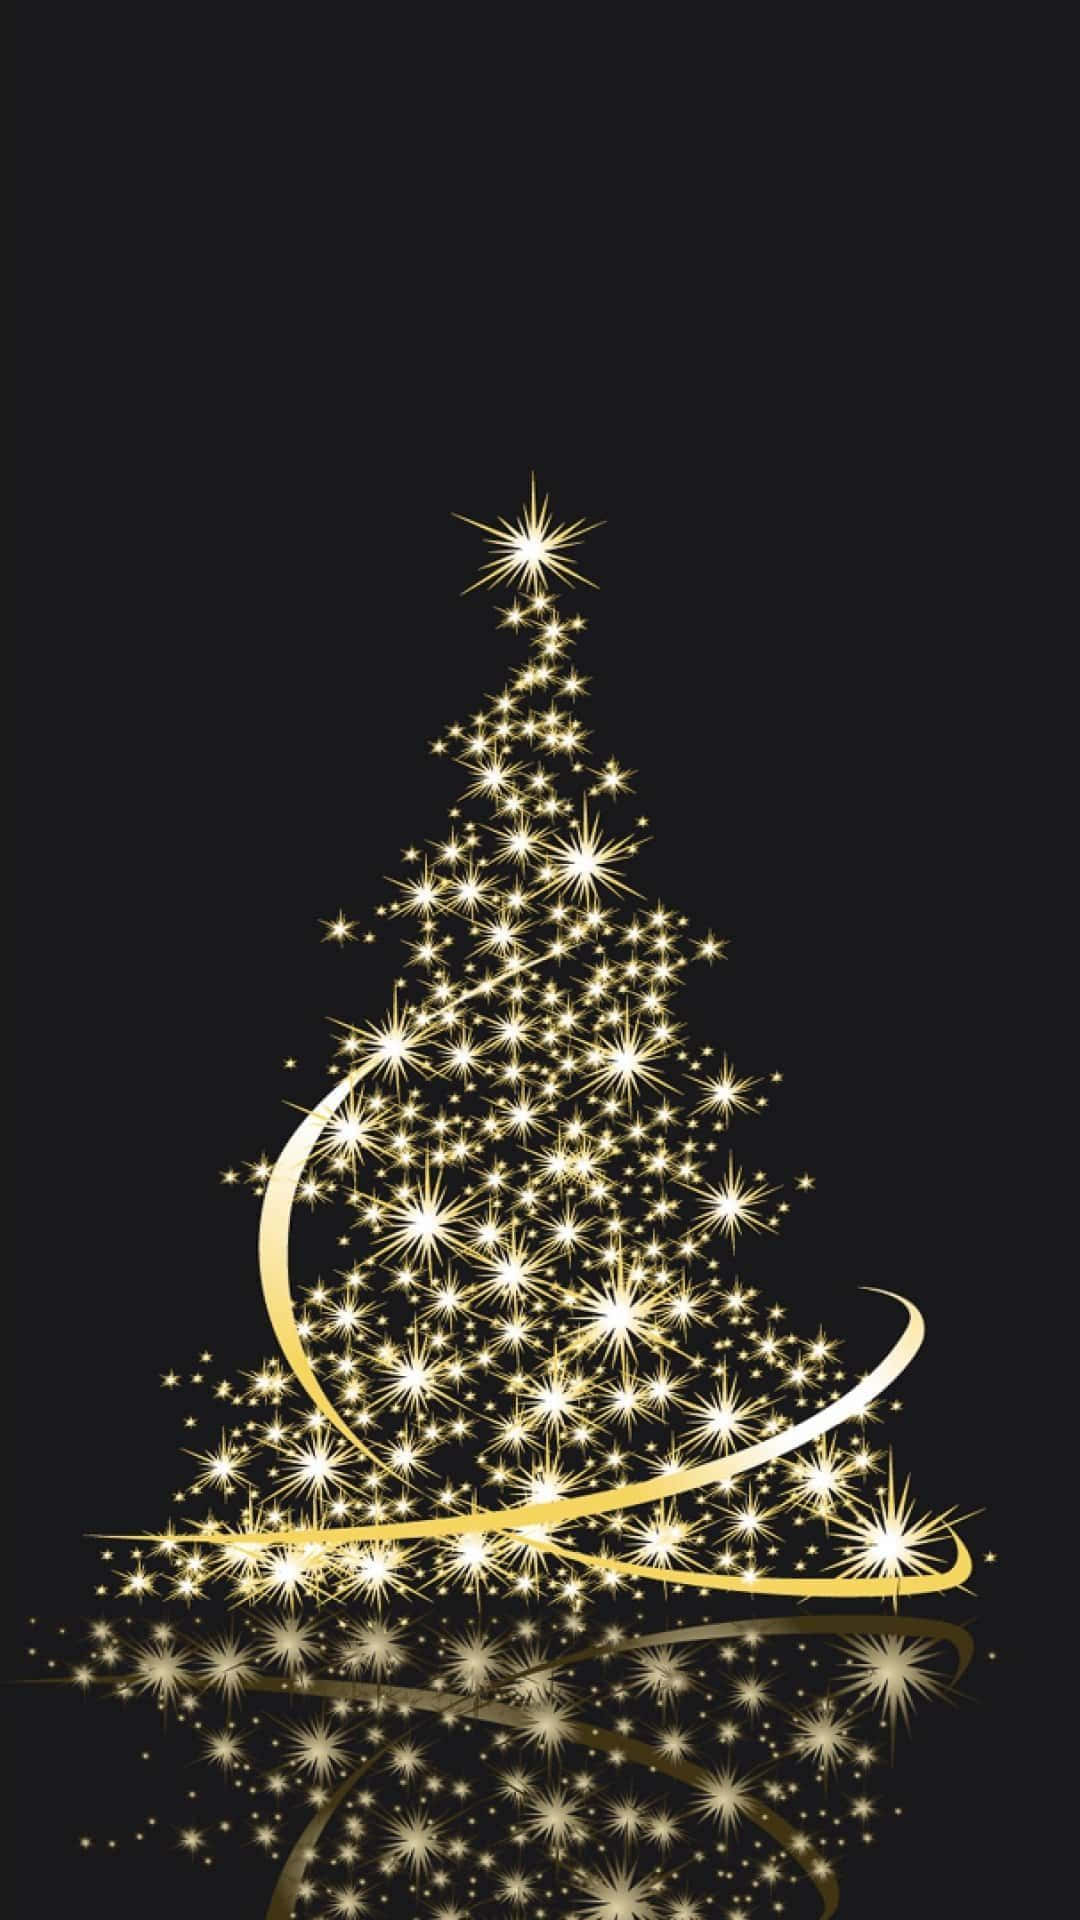 Árvorede Natal Com Estrelas Douradas Em Um Fundo Preto